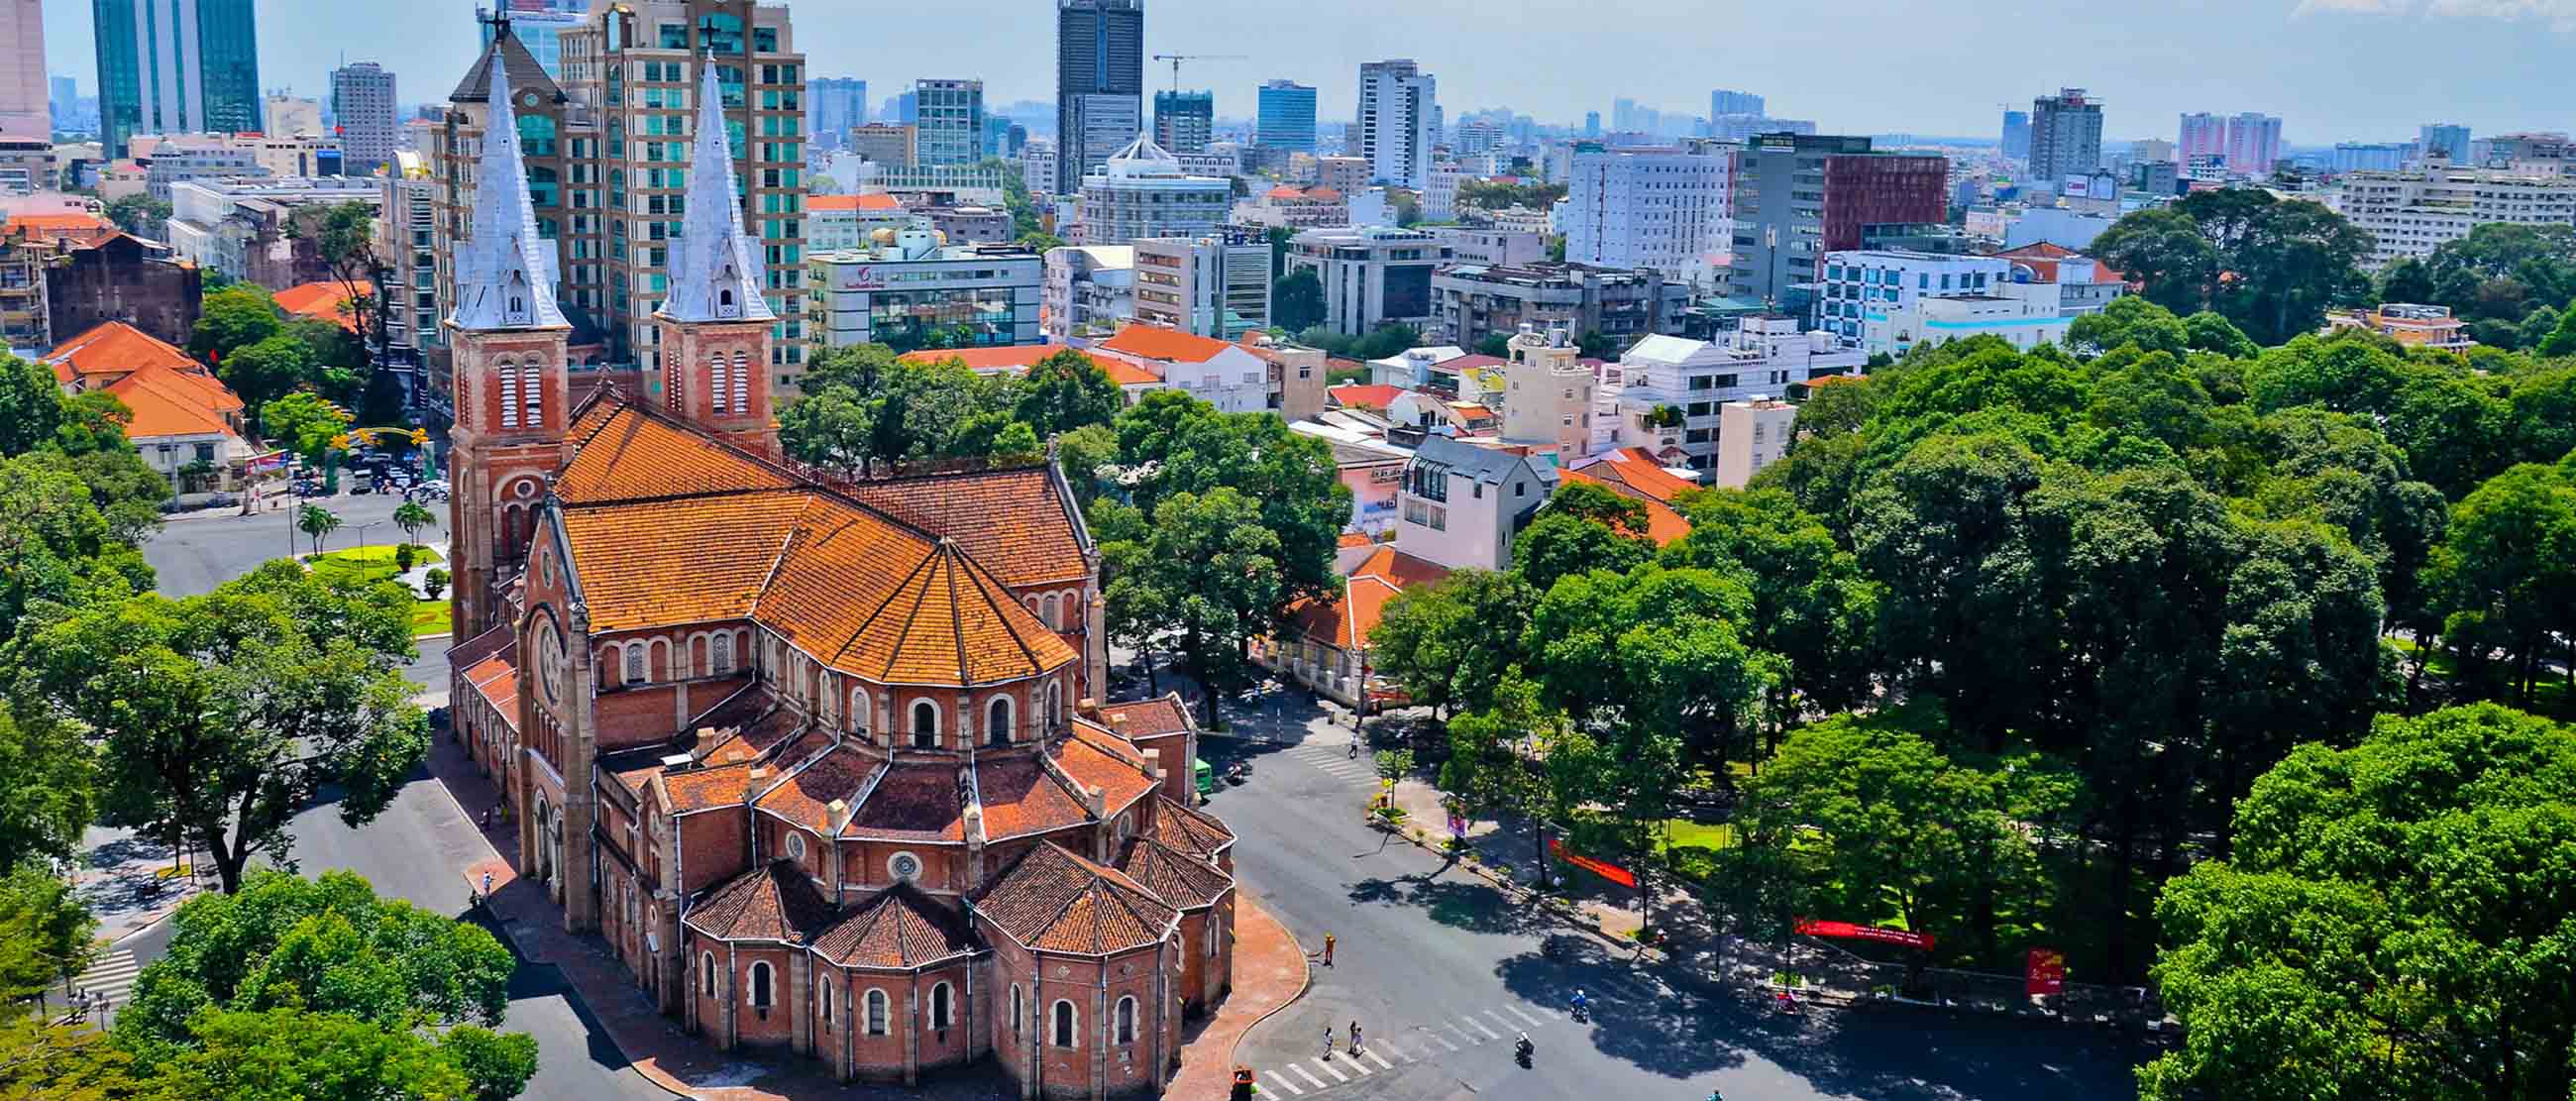 Từ Quảng Nam Quý khách có thể bay đến nhiều địa điểm nổi tiếng như Thành phố Hồ Chí Minh